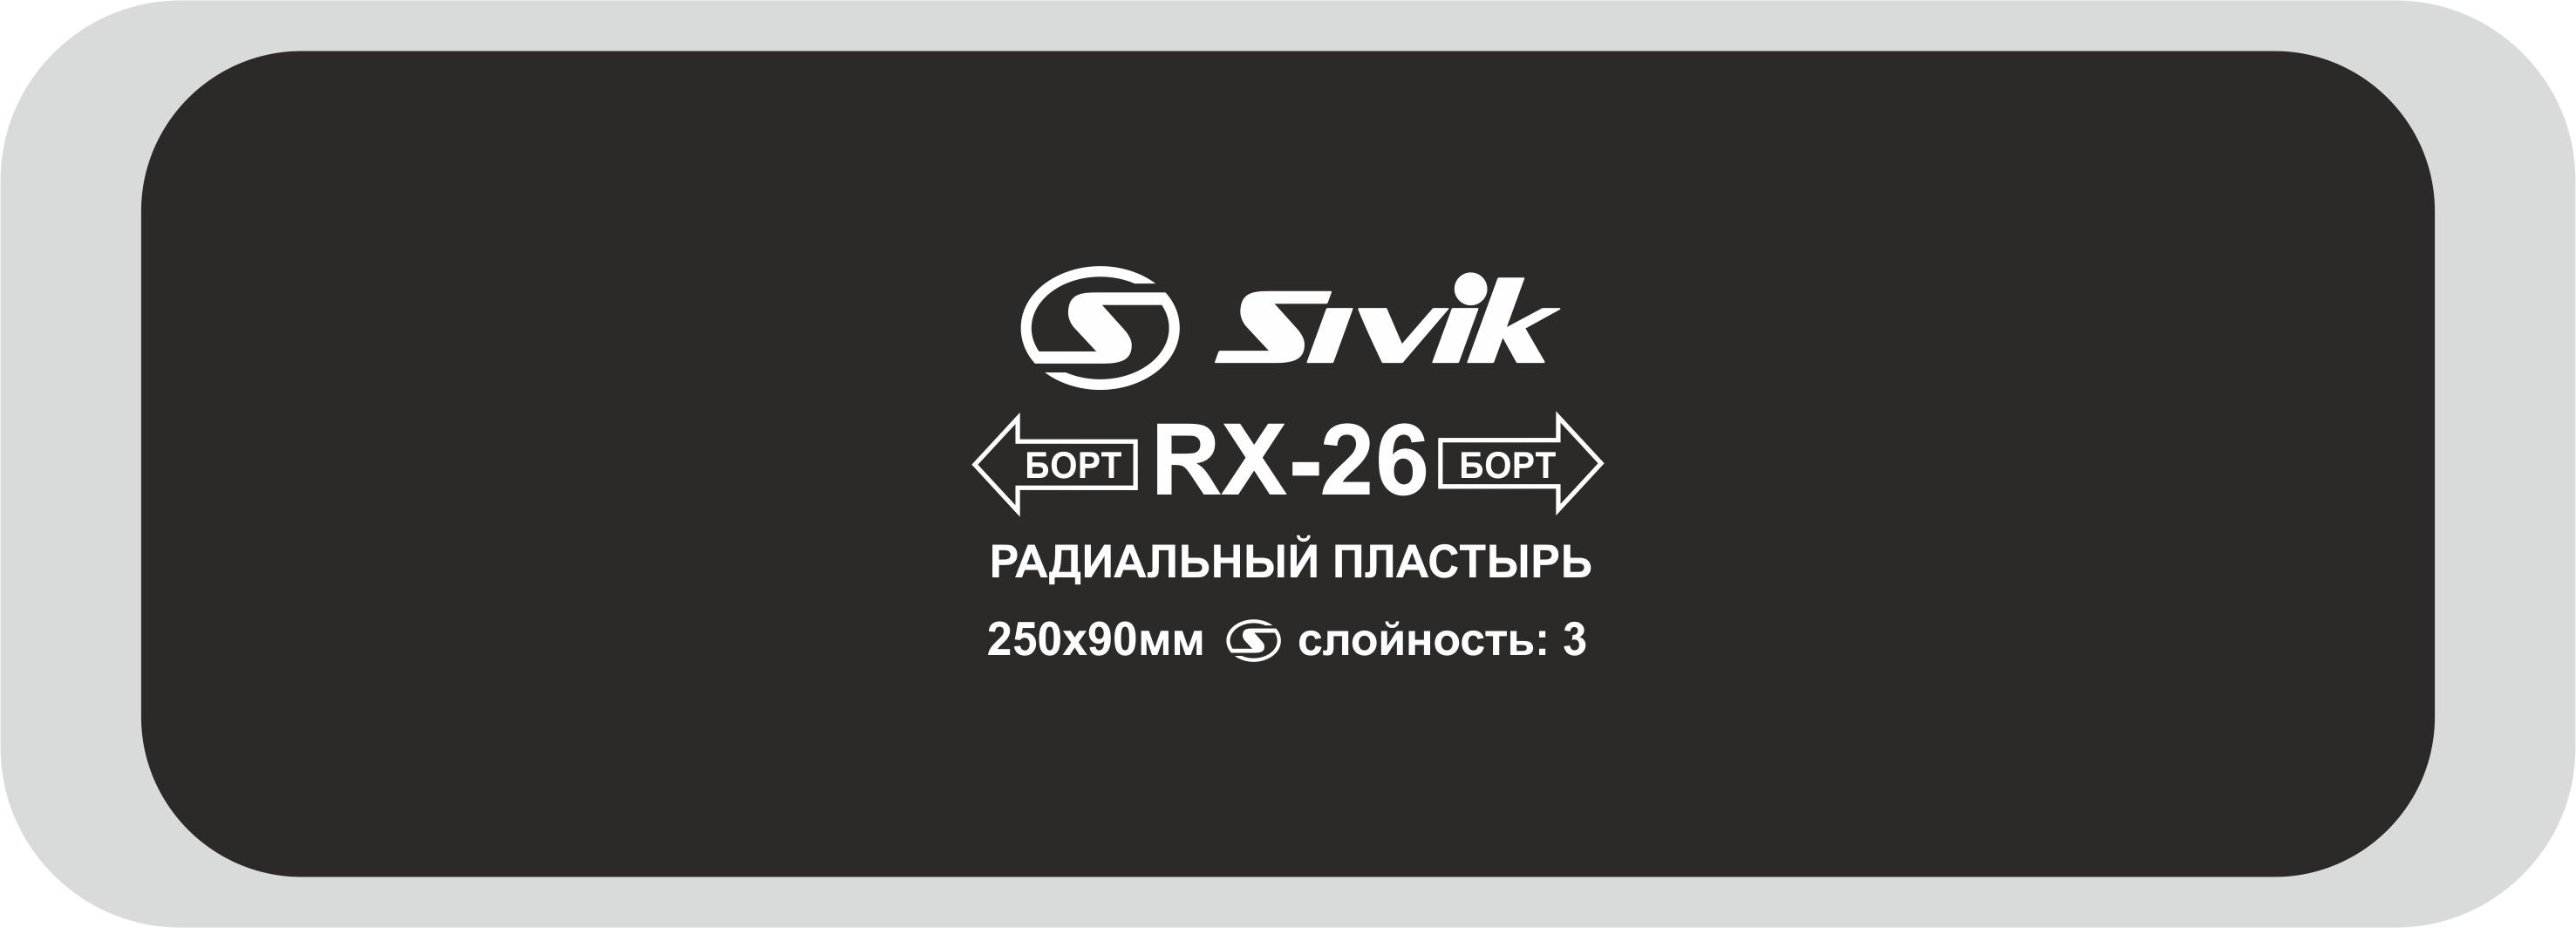 Пластырь радиальный RX-26